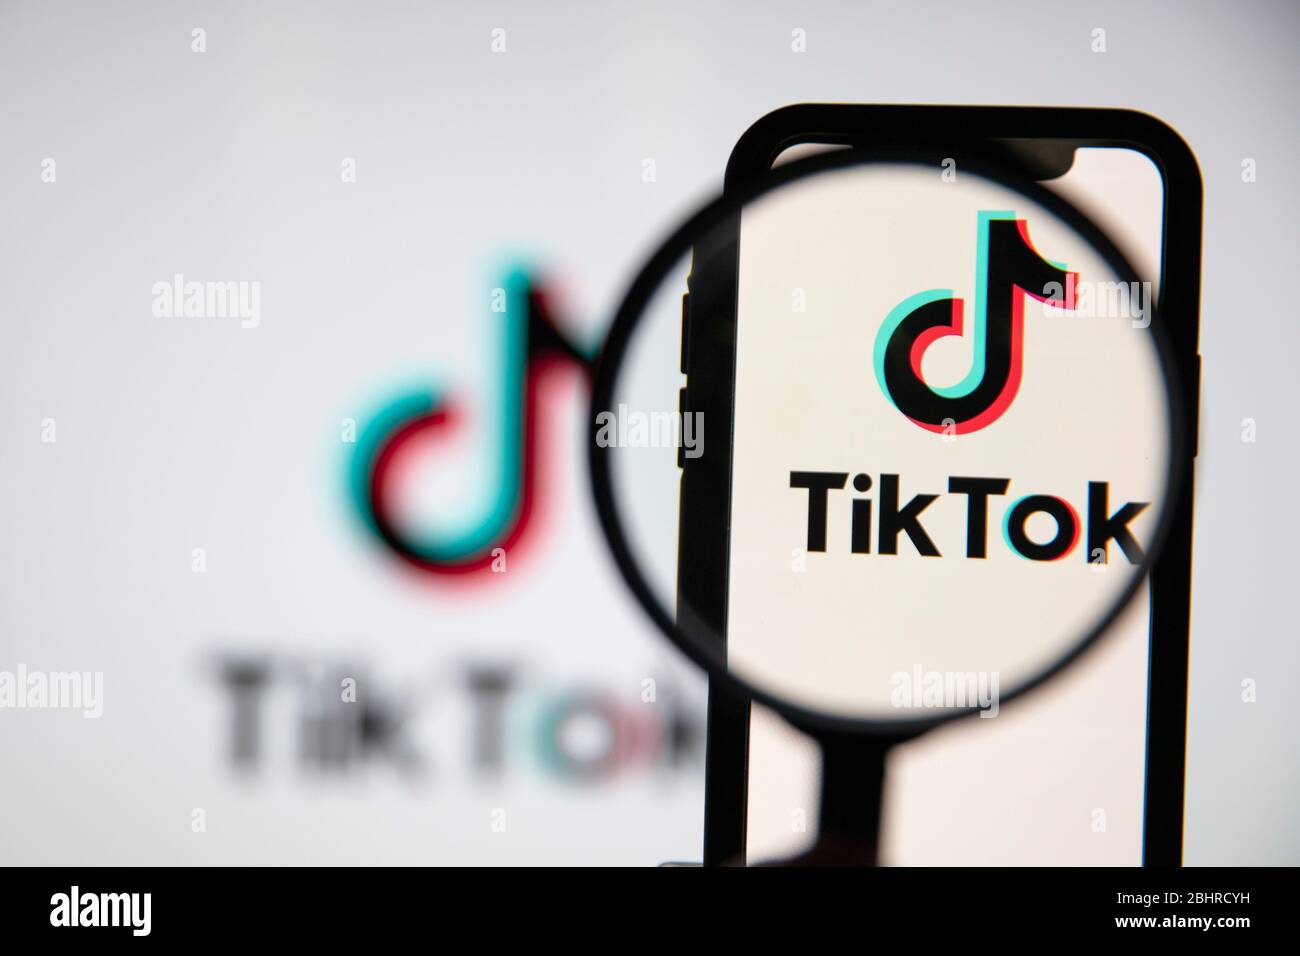 LONDRA, Regno Unito - Aprile 27 2020: Icona dell'app di social media Tik Tok al microscopio Foto Stock